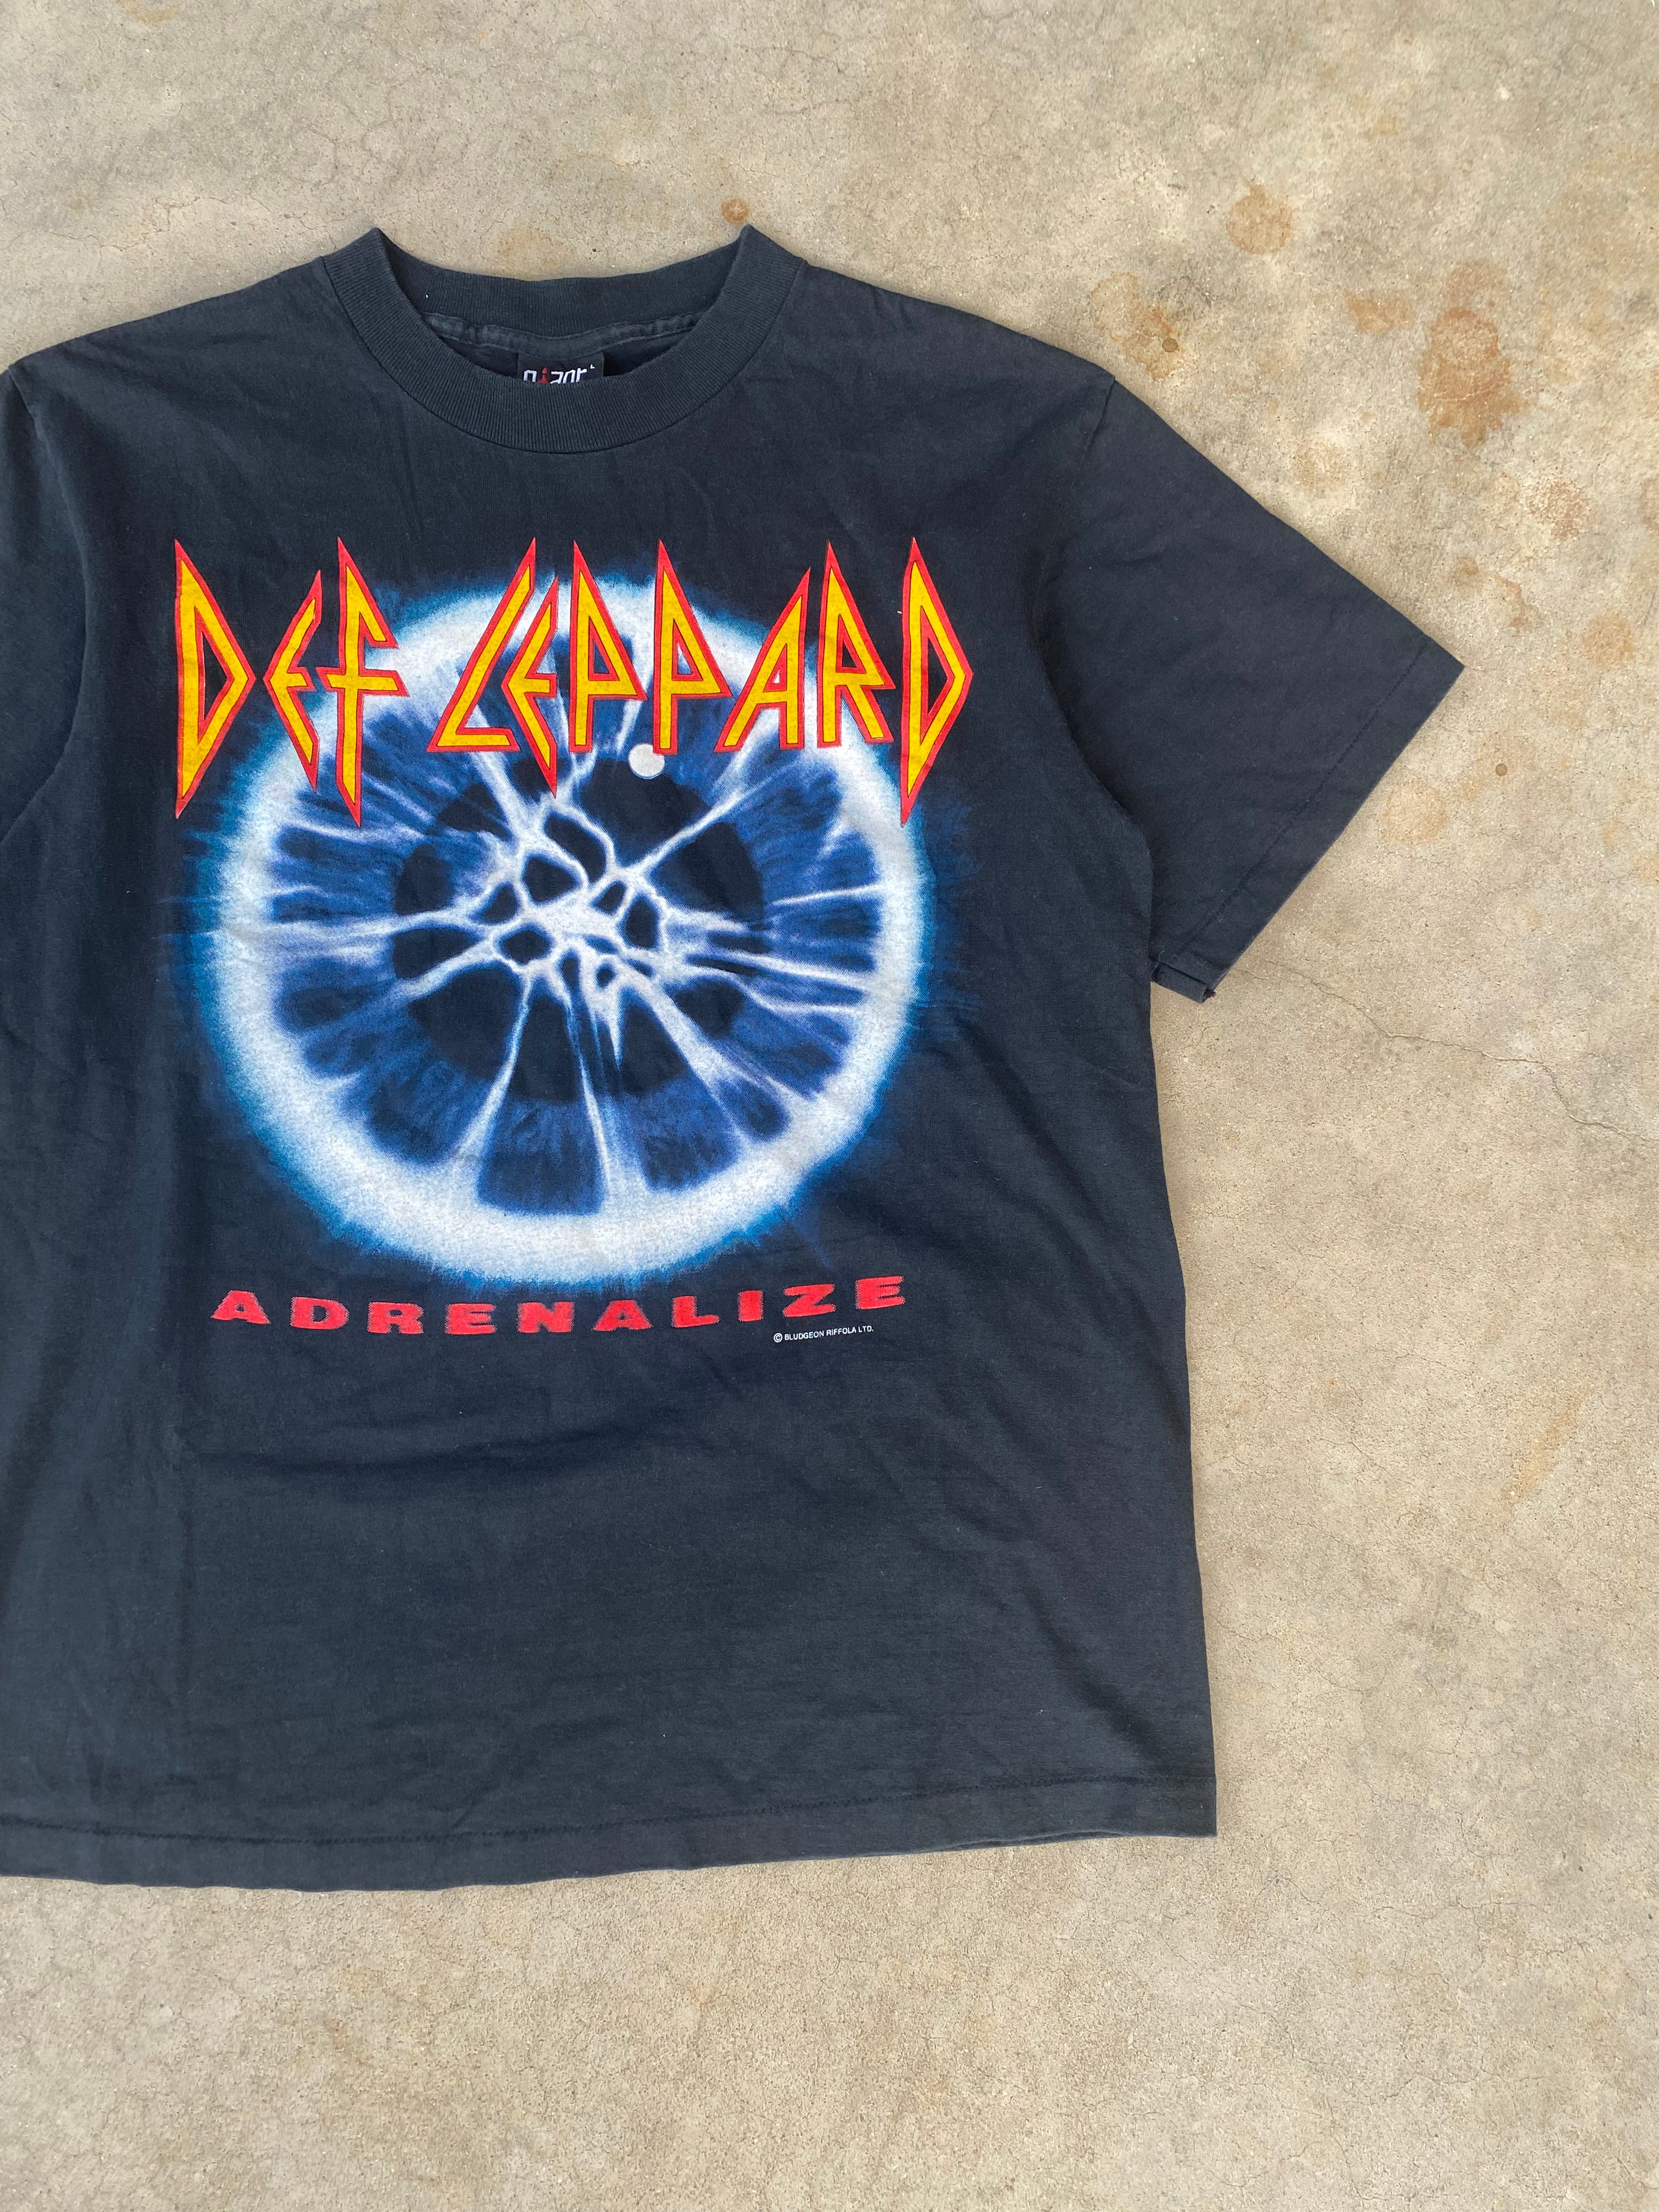 1990s Def Leppard Adrenalize Tour T-Shirt (M)